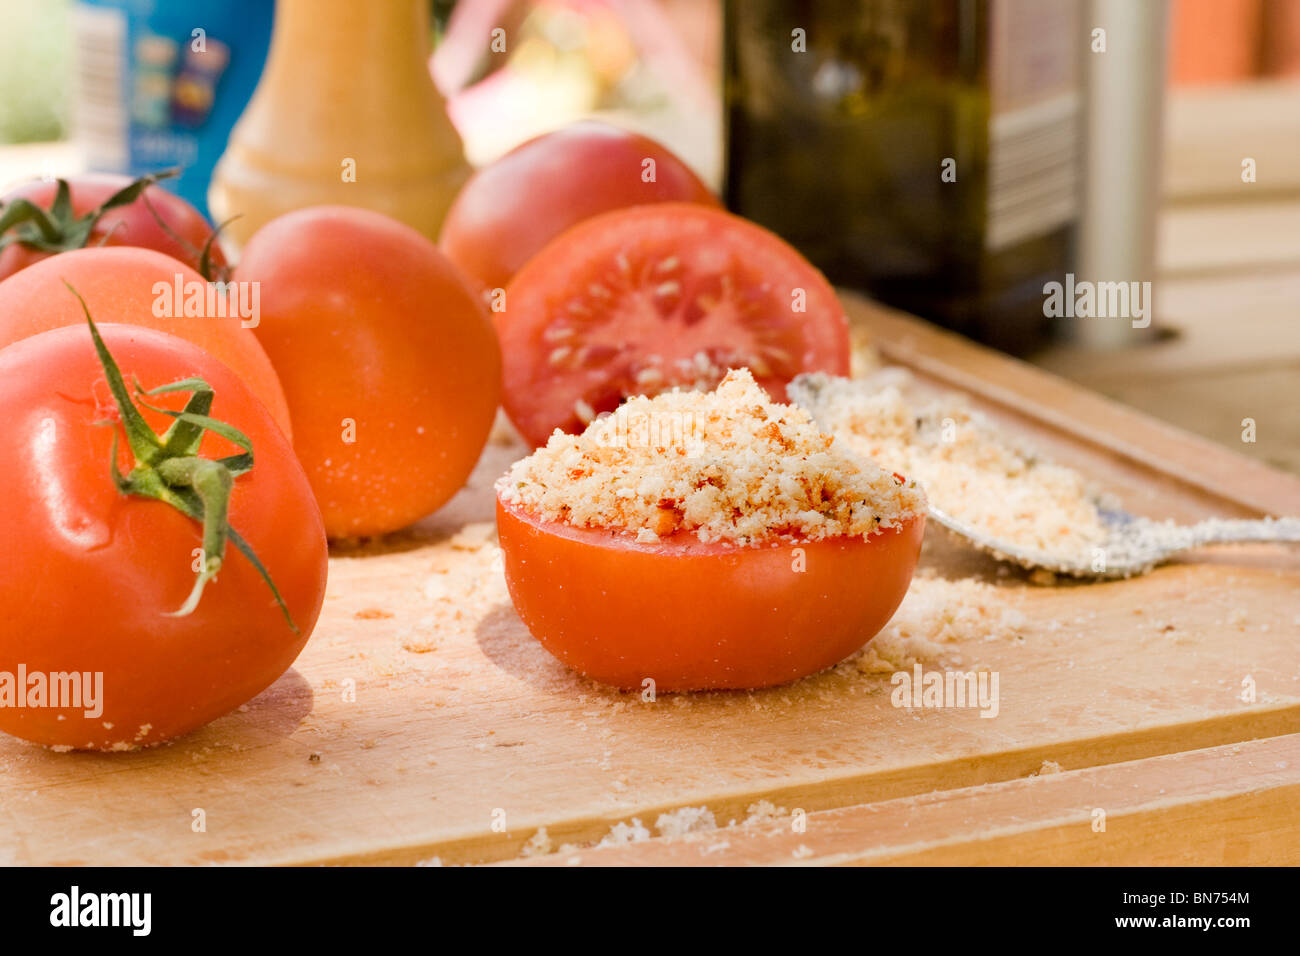 stuffed tomatoes Stock Photo